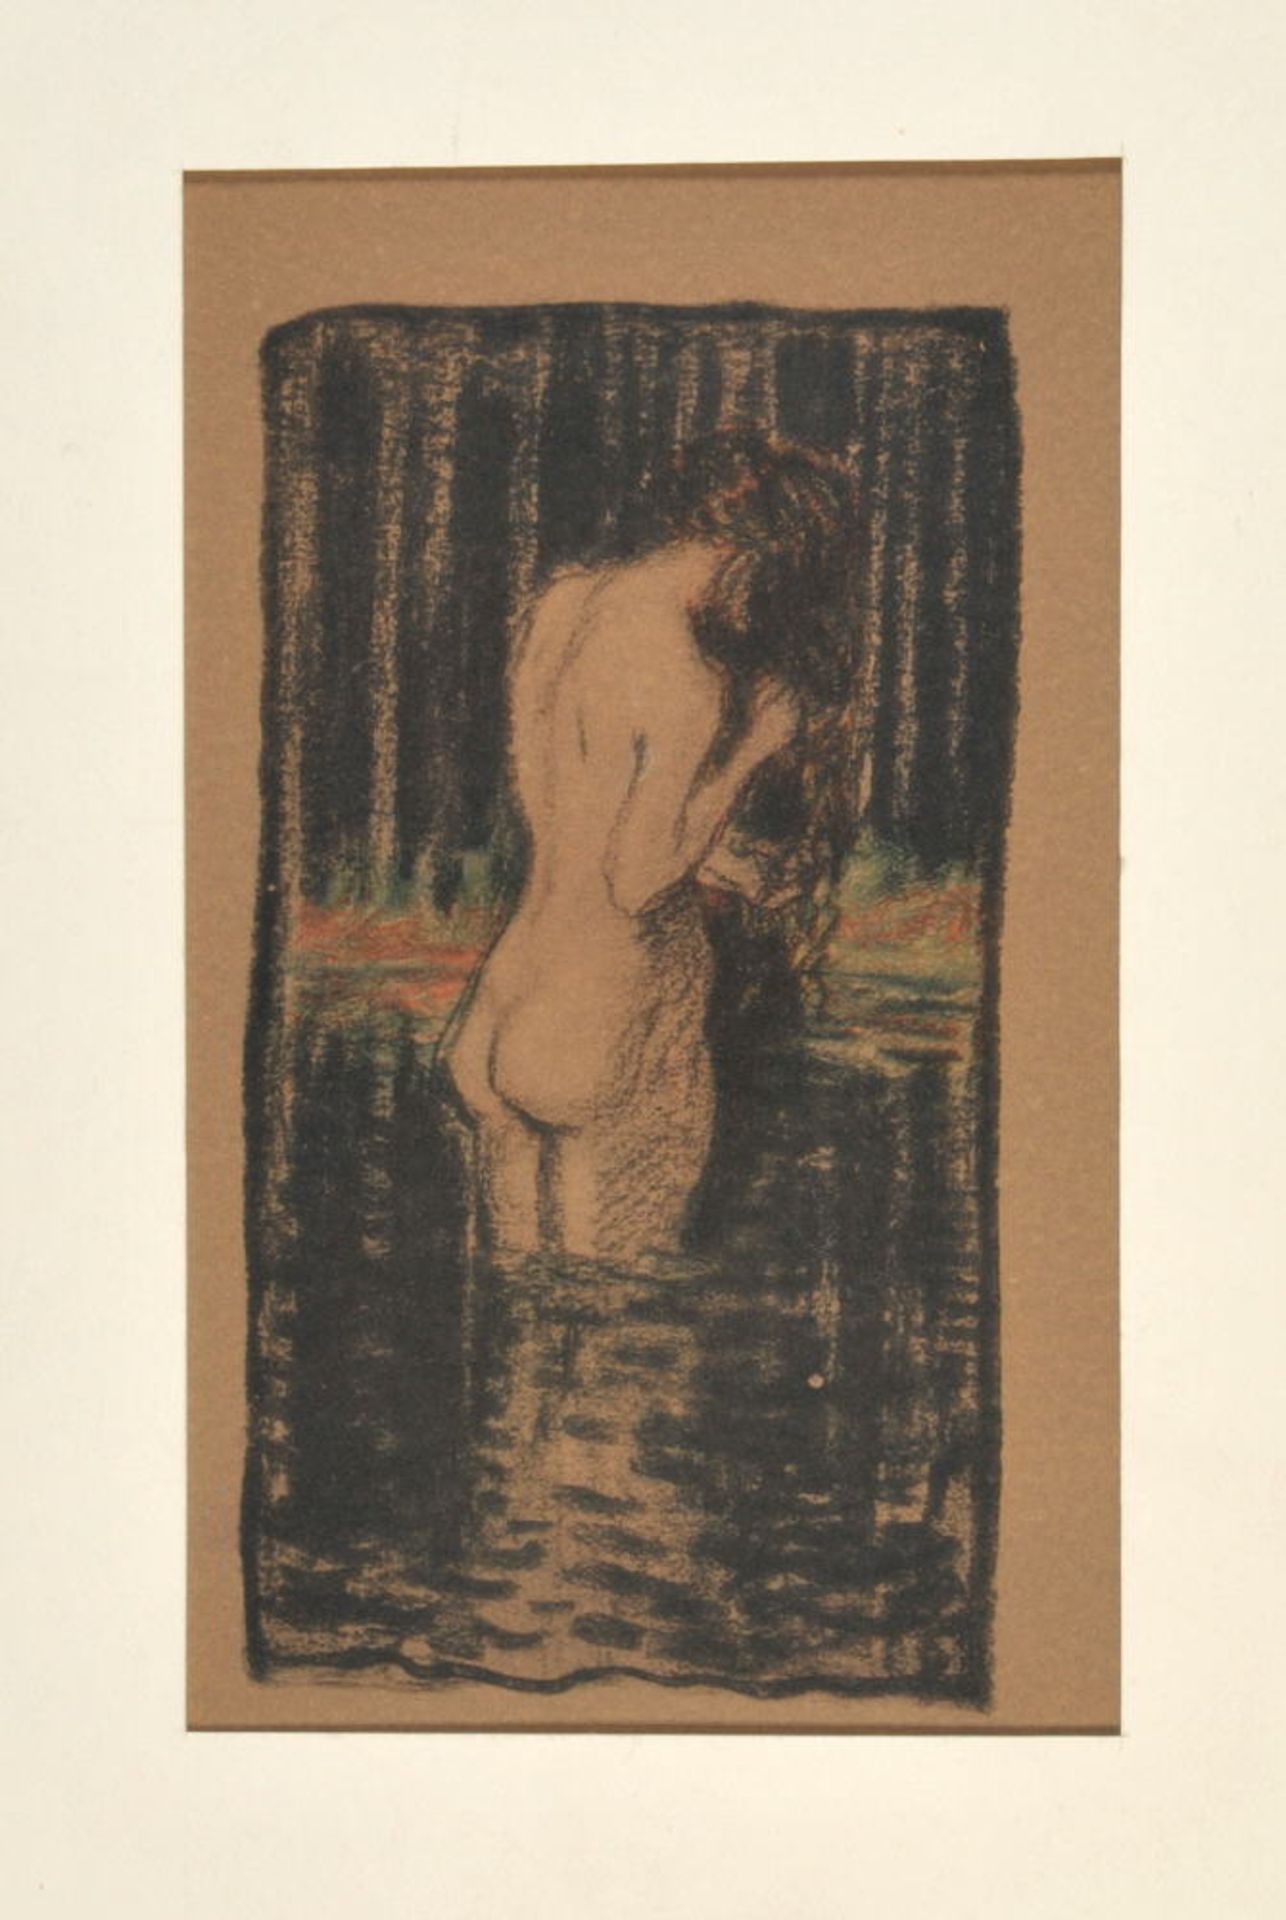 Hofmann, Ludwig von, 1861 Darmstadt - 1945 PillnitzFarblichtdruck, 15,5 x 8,5 cm, betit. "